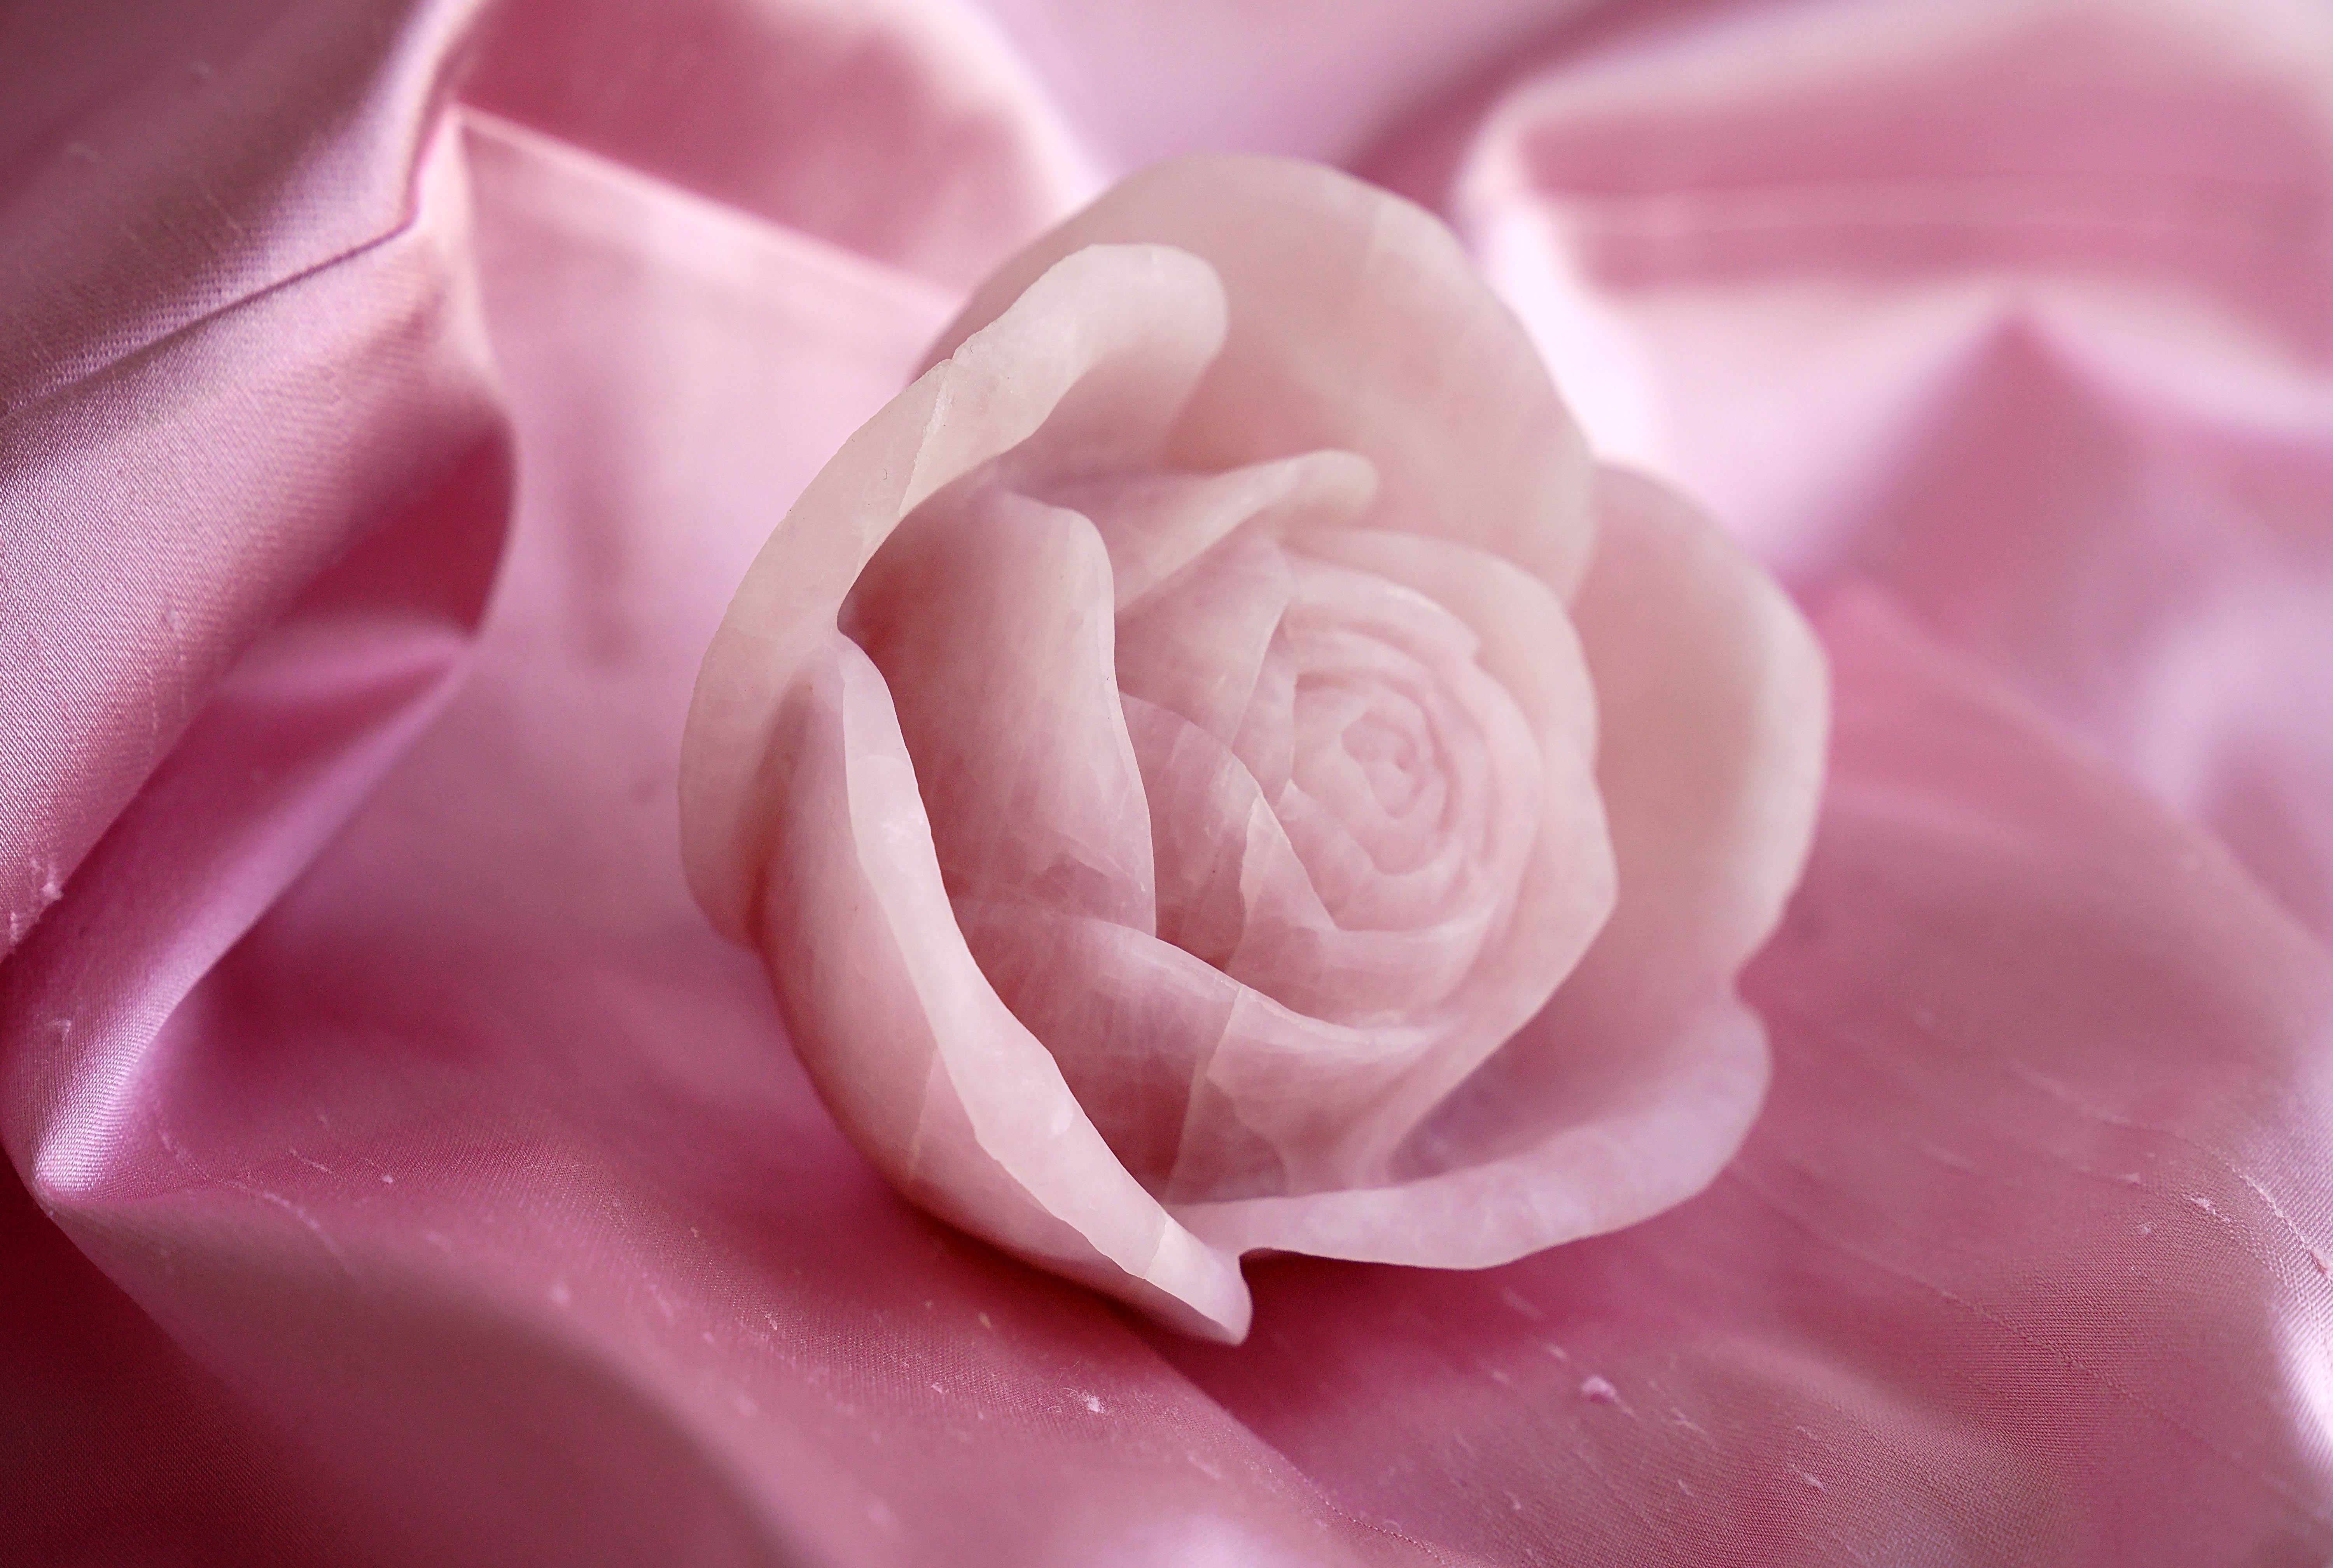 Die Rosenblüte wurde vollständig von Hand aus einem massiven Block aus seltenem Rosenquarz geformt. 

Abmessungen: ca. T 12 x H 12 cm. Erhältlich in verschiedenen Marmorsorten, Onyx und Quarzit. 

Jede Rose ist von den Künstlern handsigniert und